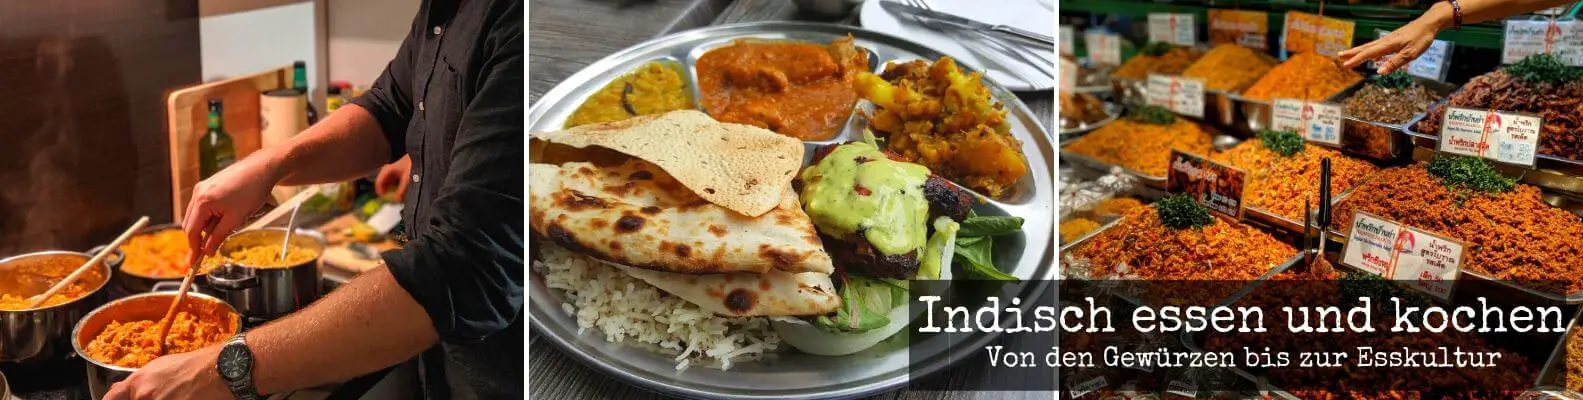 Indisch kochen und essen - Von Gewürzen und Esskultur